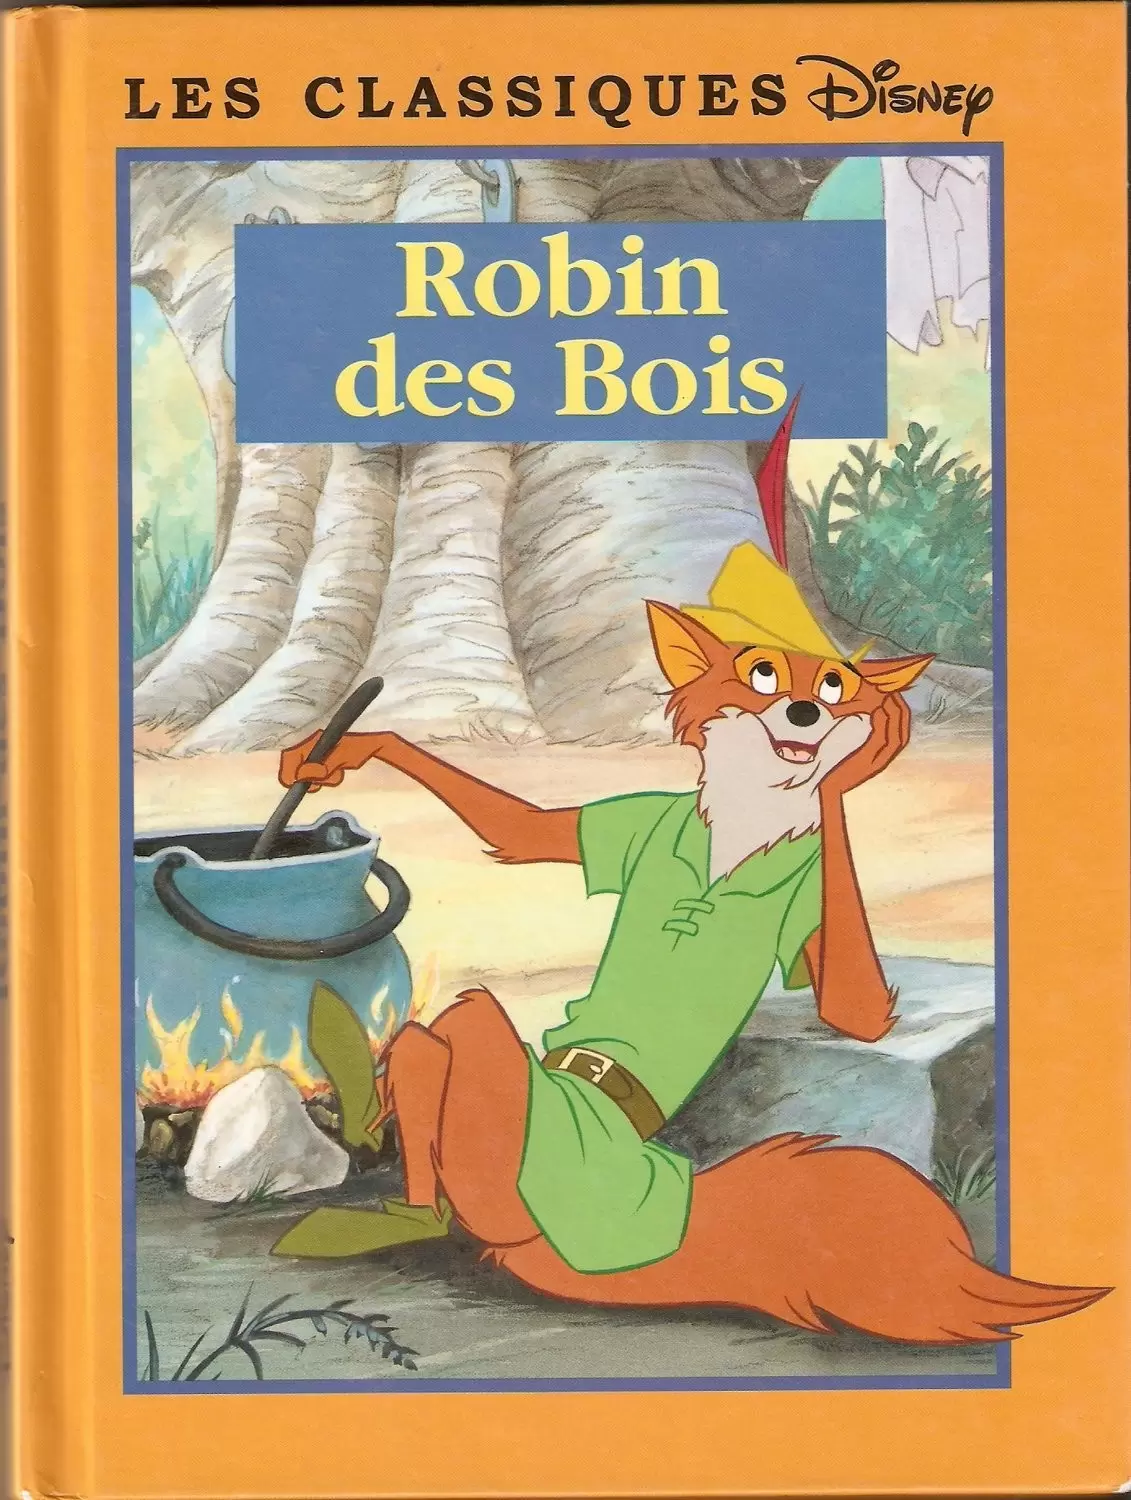 Les Classiques Disney - Edition France Loisirs - Robin des Bois